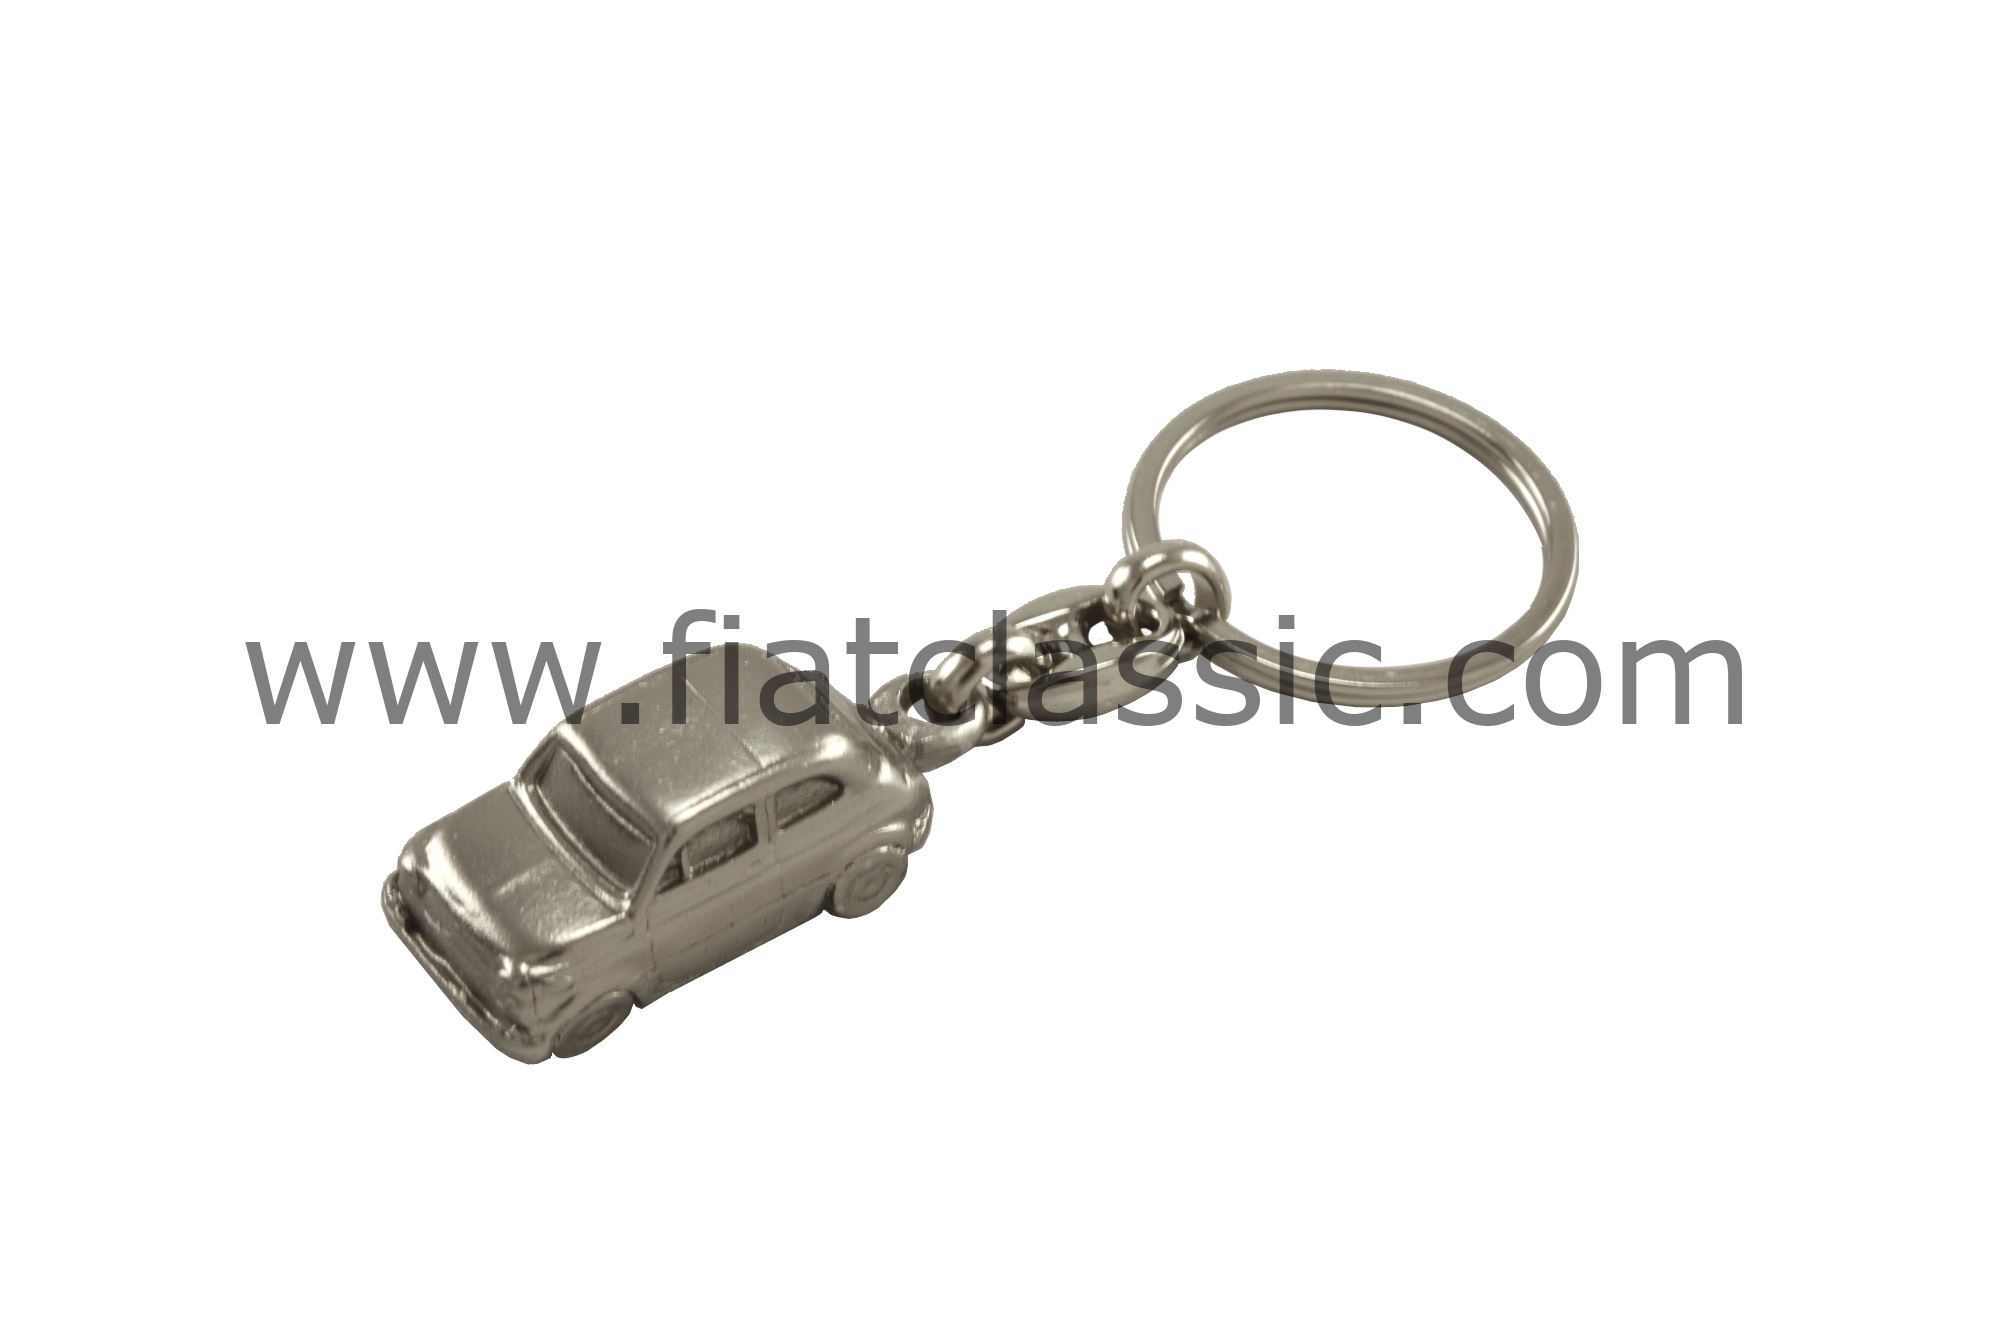 Porte-clés Fiat 500, blanc, métal